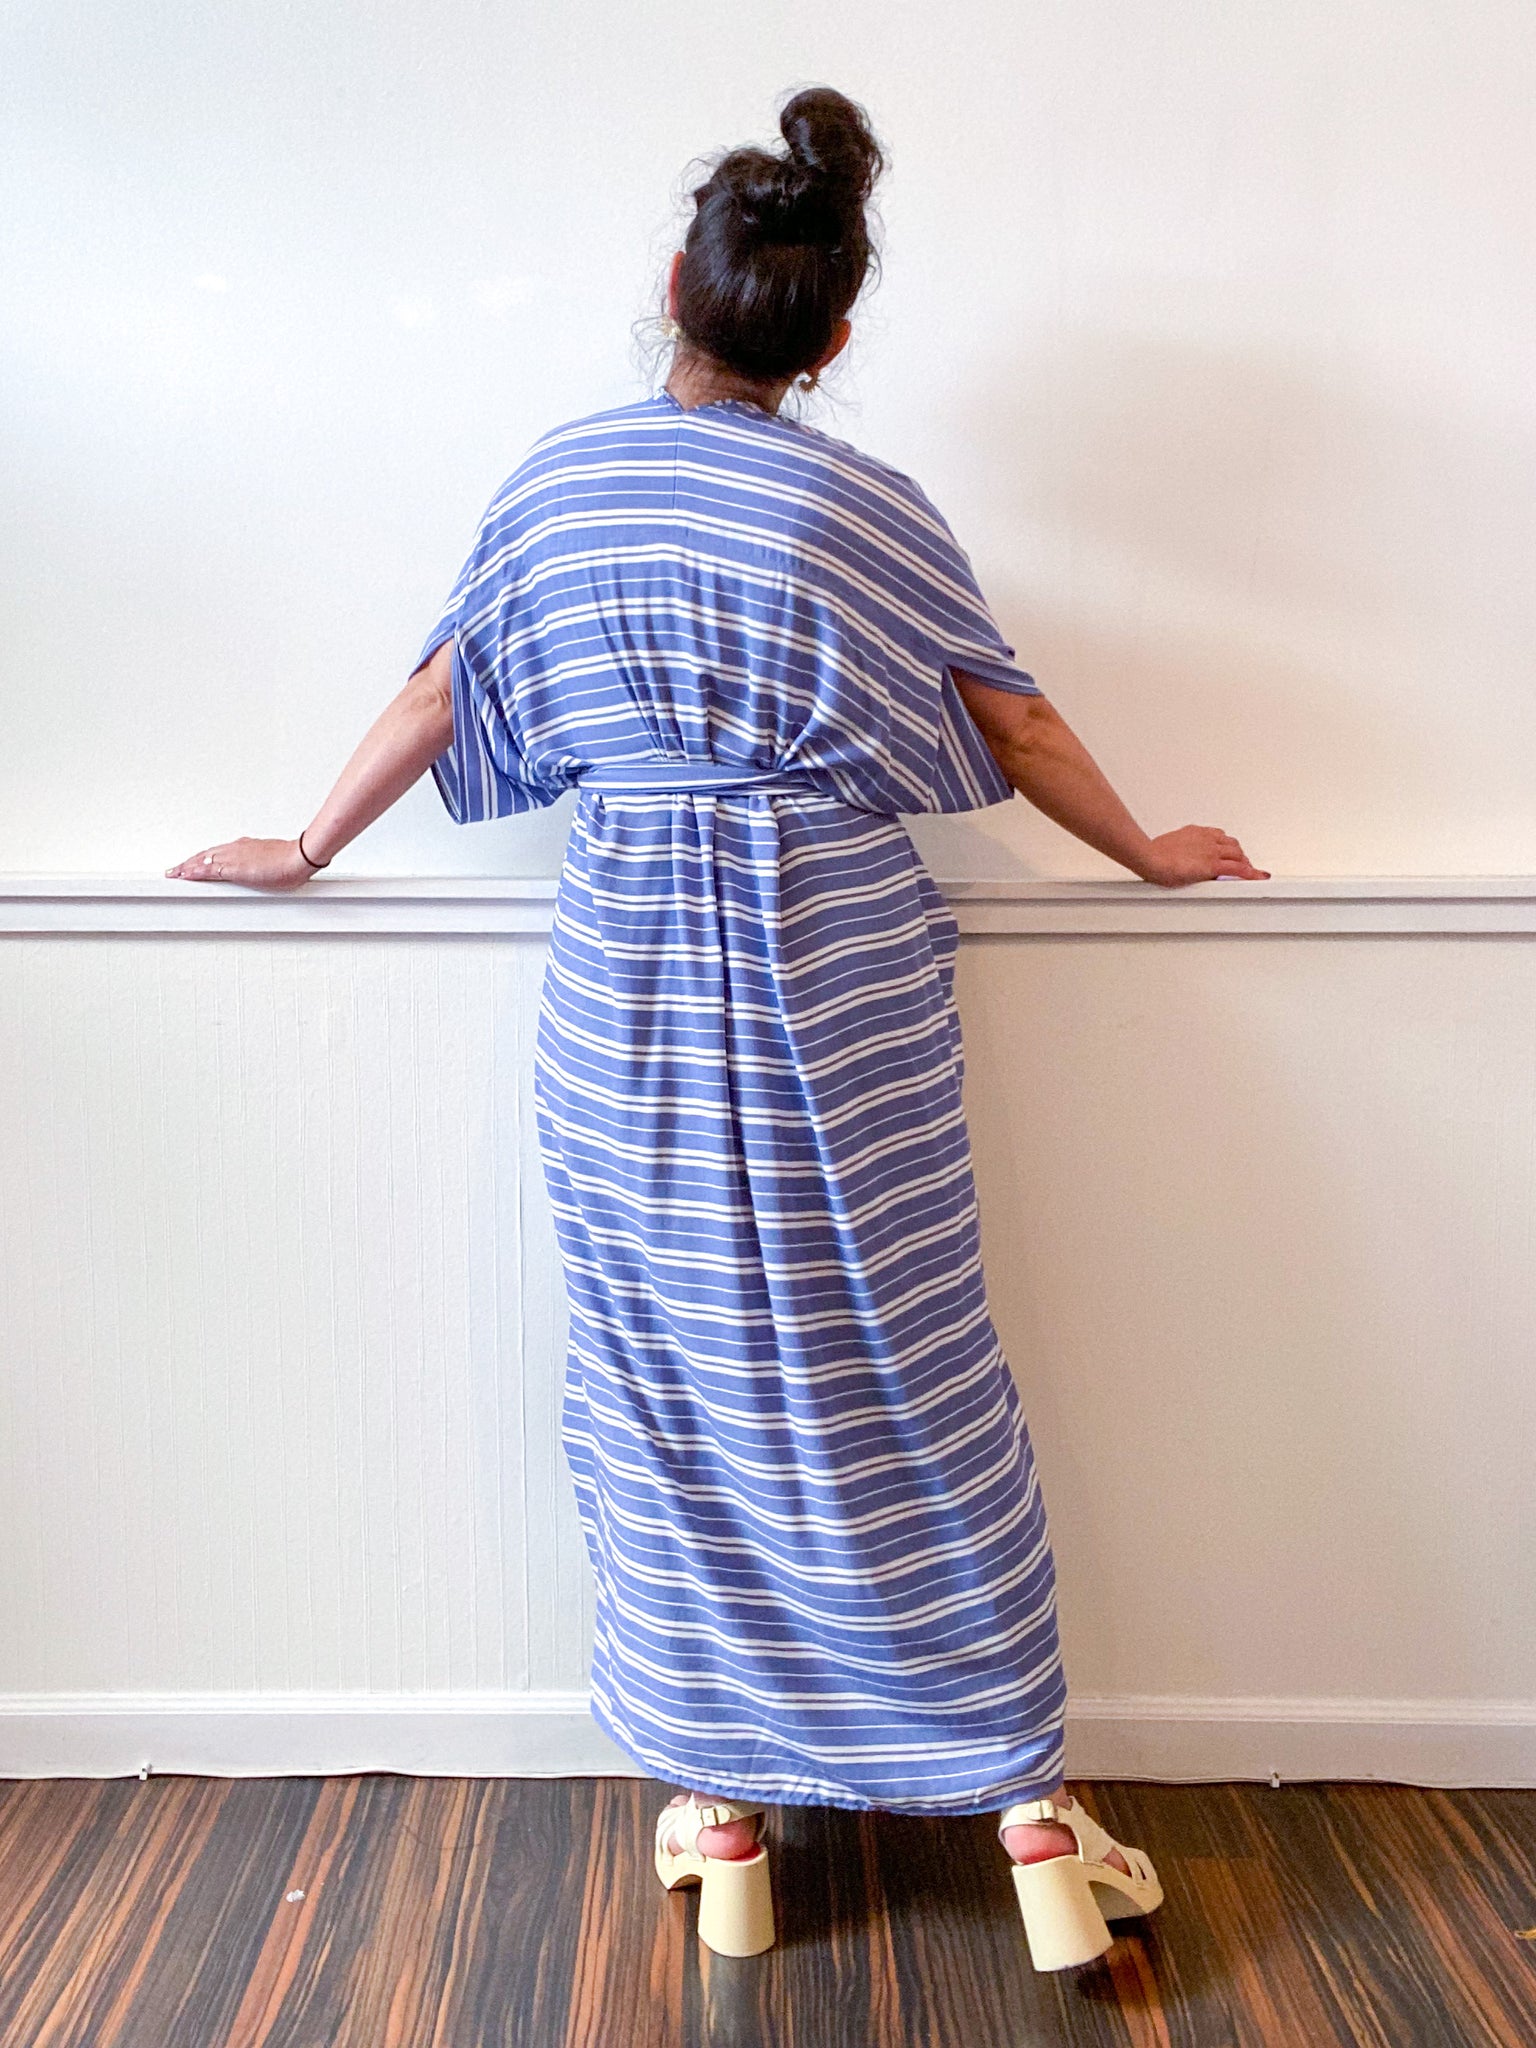 Print High Low Kimono Blue White Stripes Rayon Challis